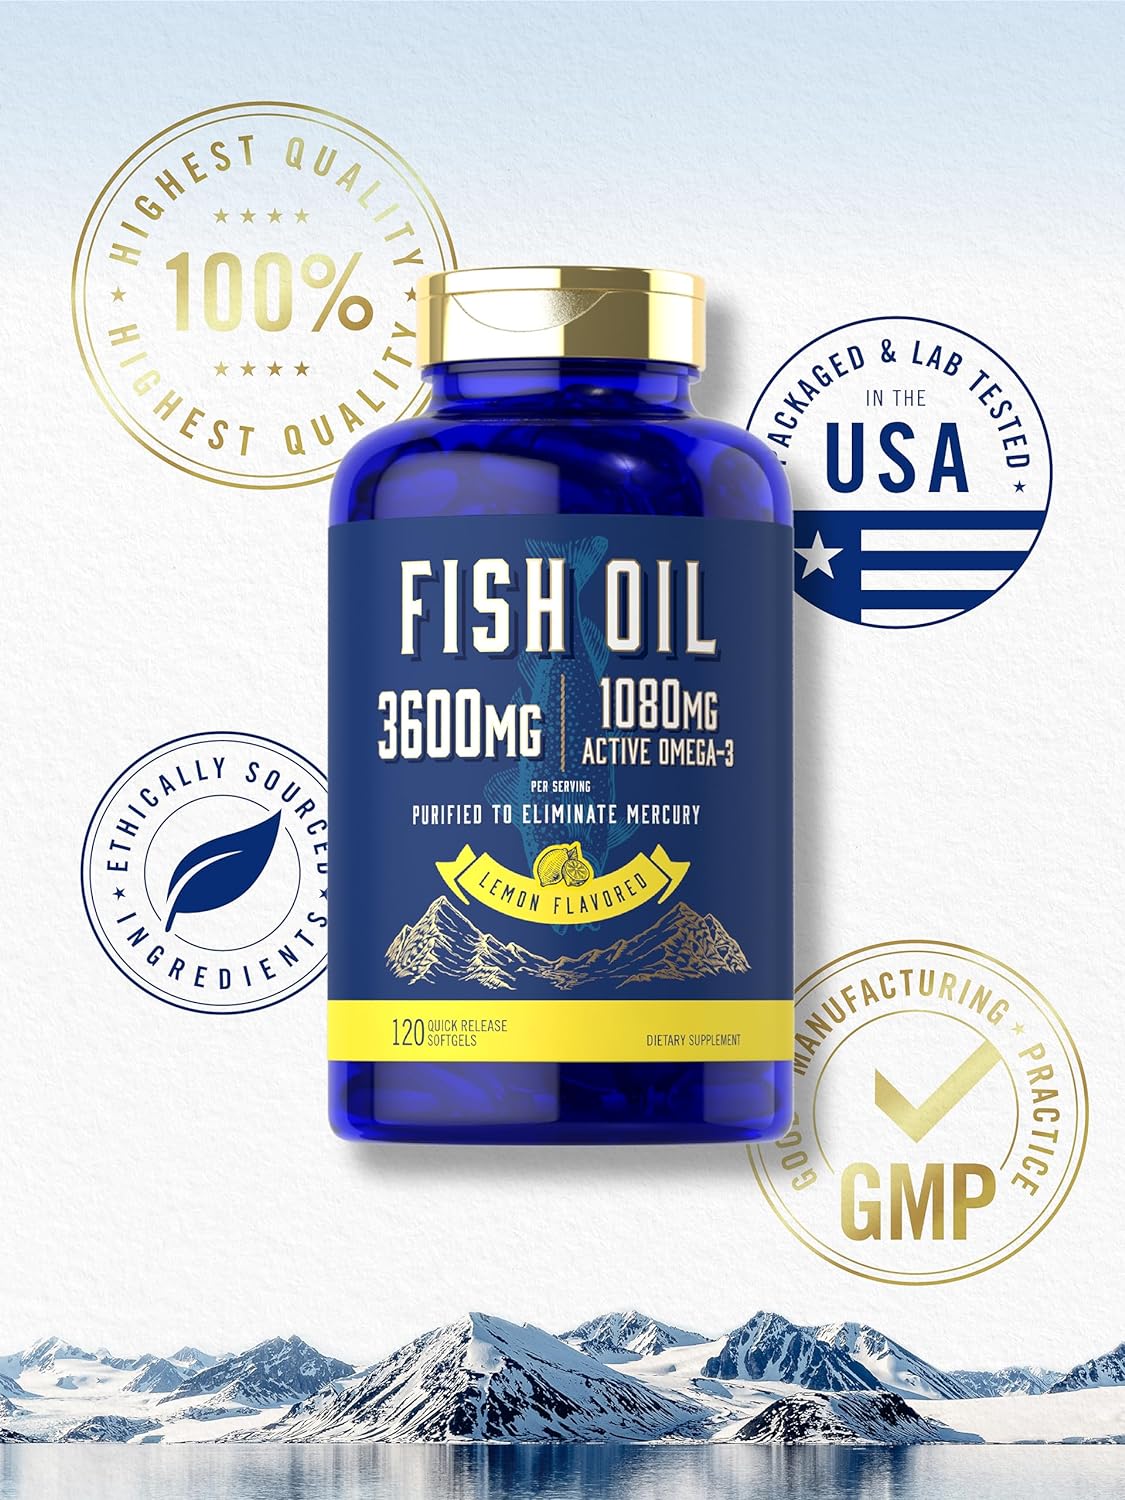 Fish Oil 3600mg | 1080mg Omega 3 | 120 Softgels